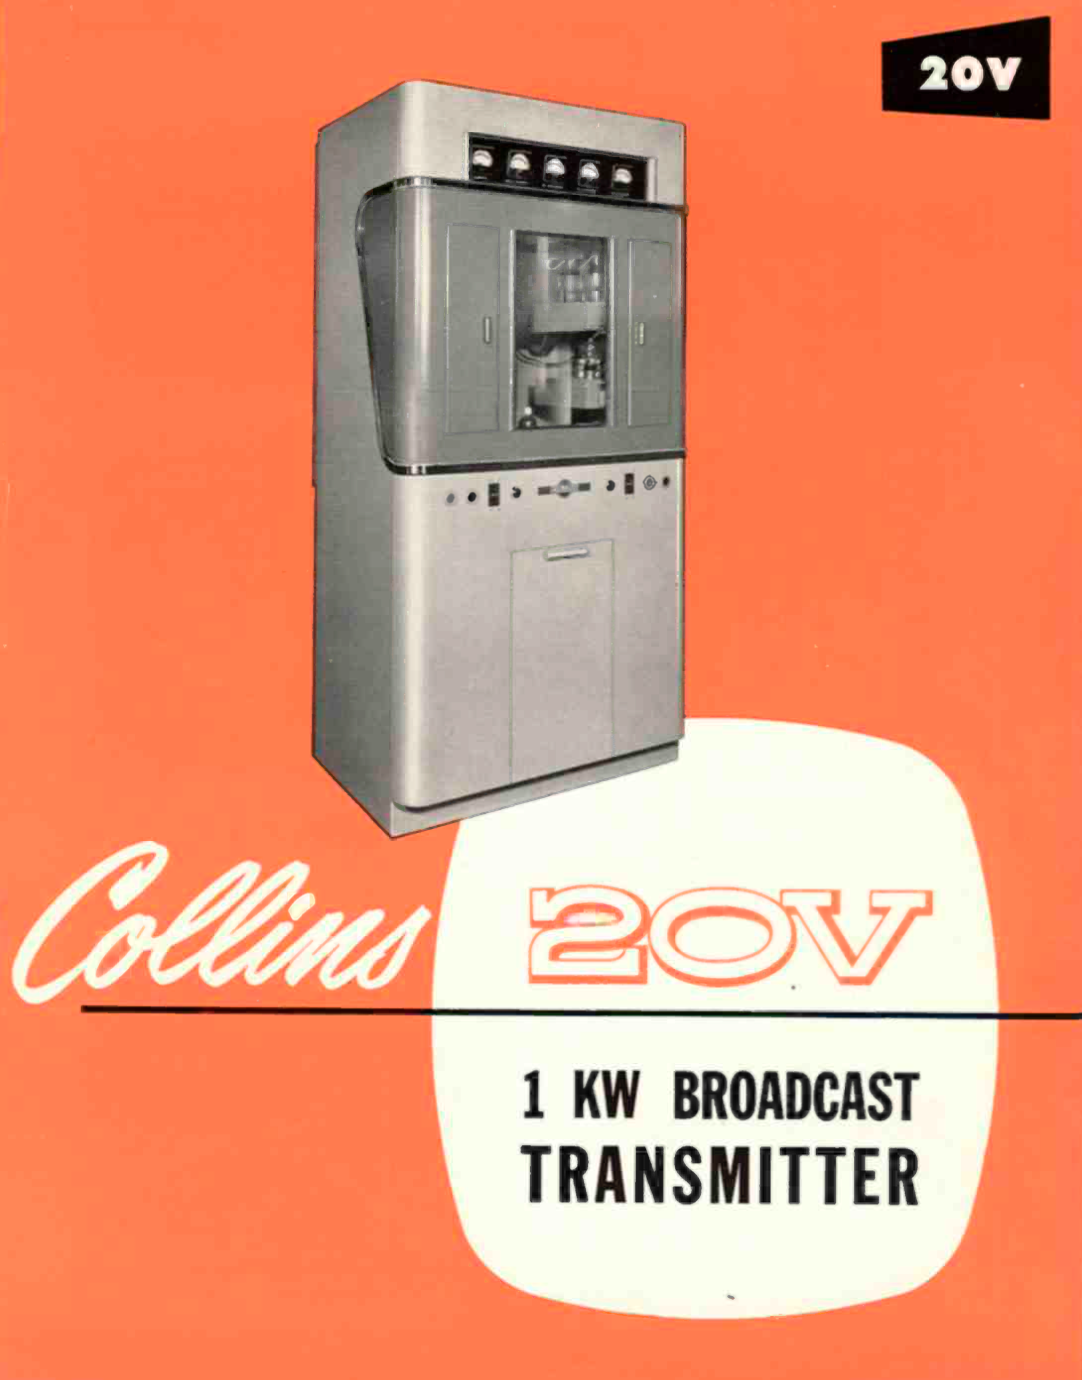 Collins 20V 1KW AM Broadcast Transmitter Brochure